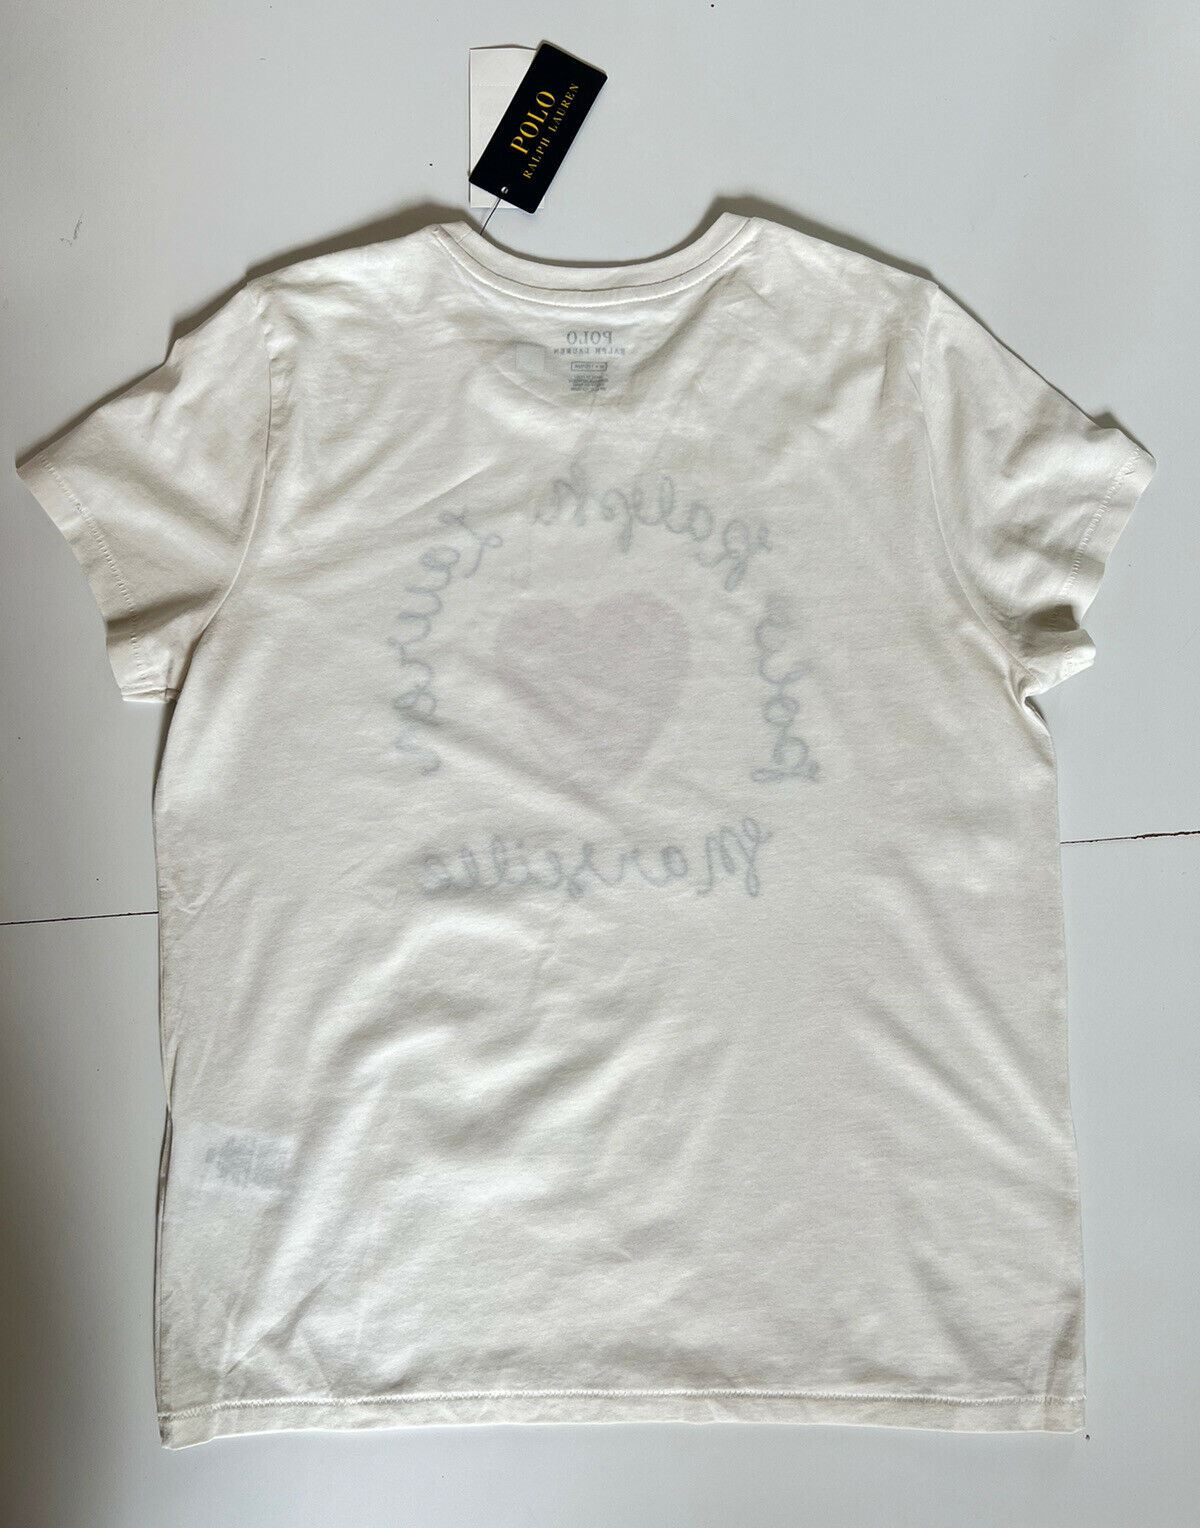 Neu mit Etikett: 78 $ Polo Ralph Lauren Heart Damen-T-Shirt Weiß Medium